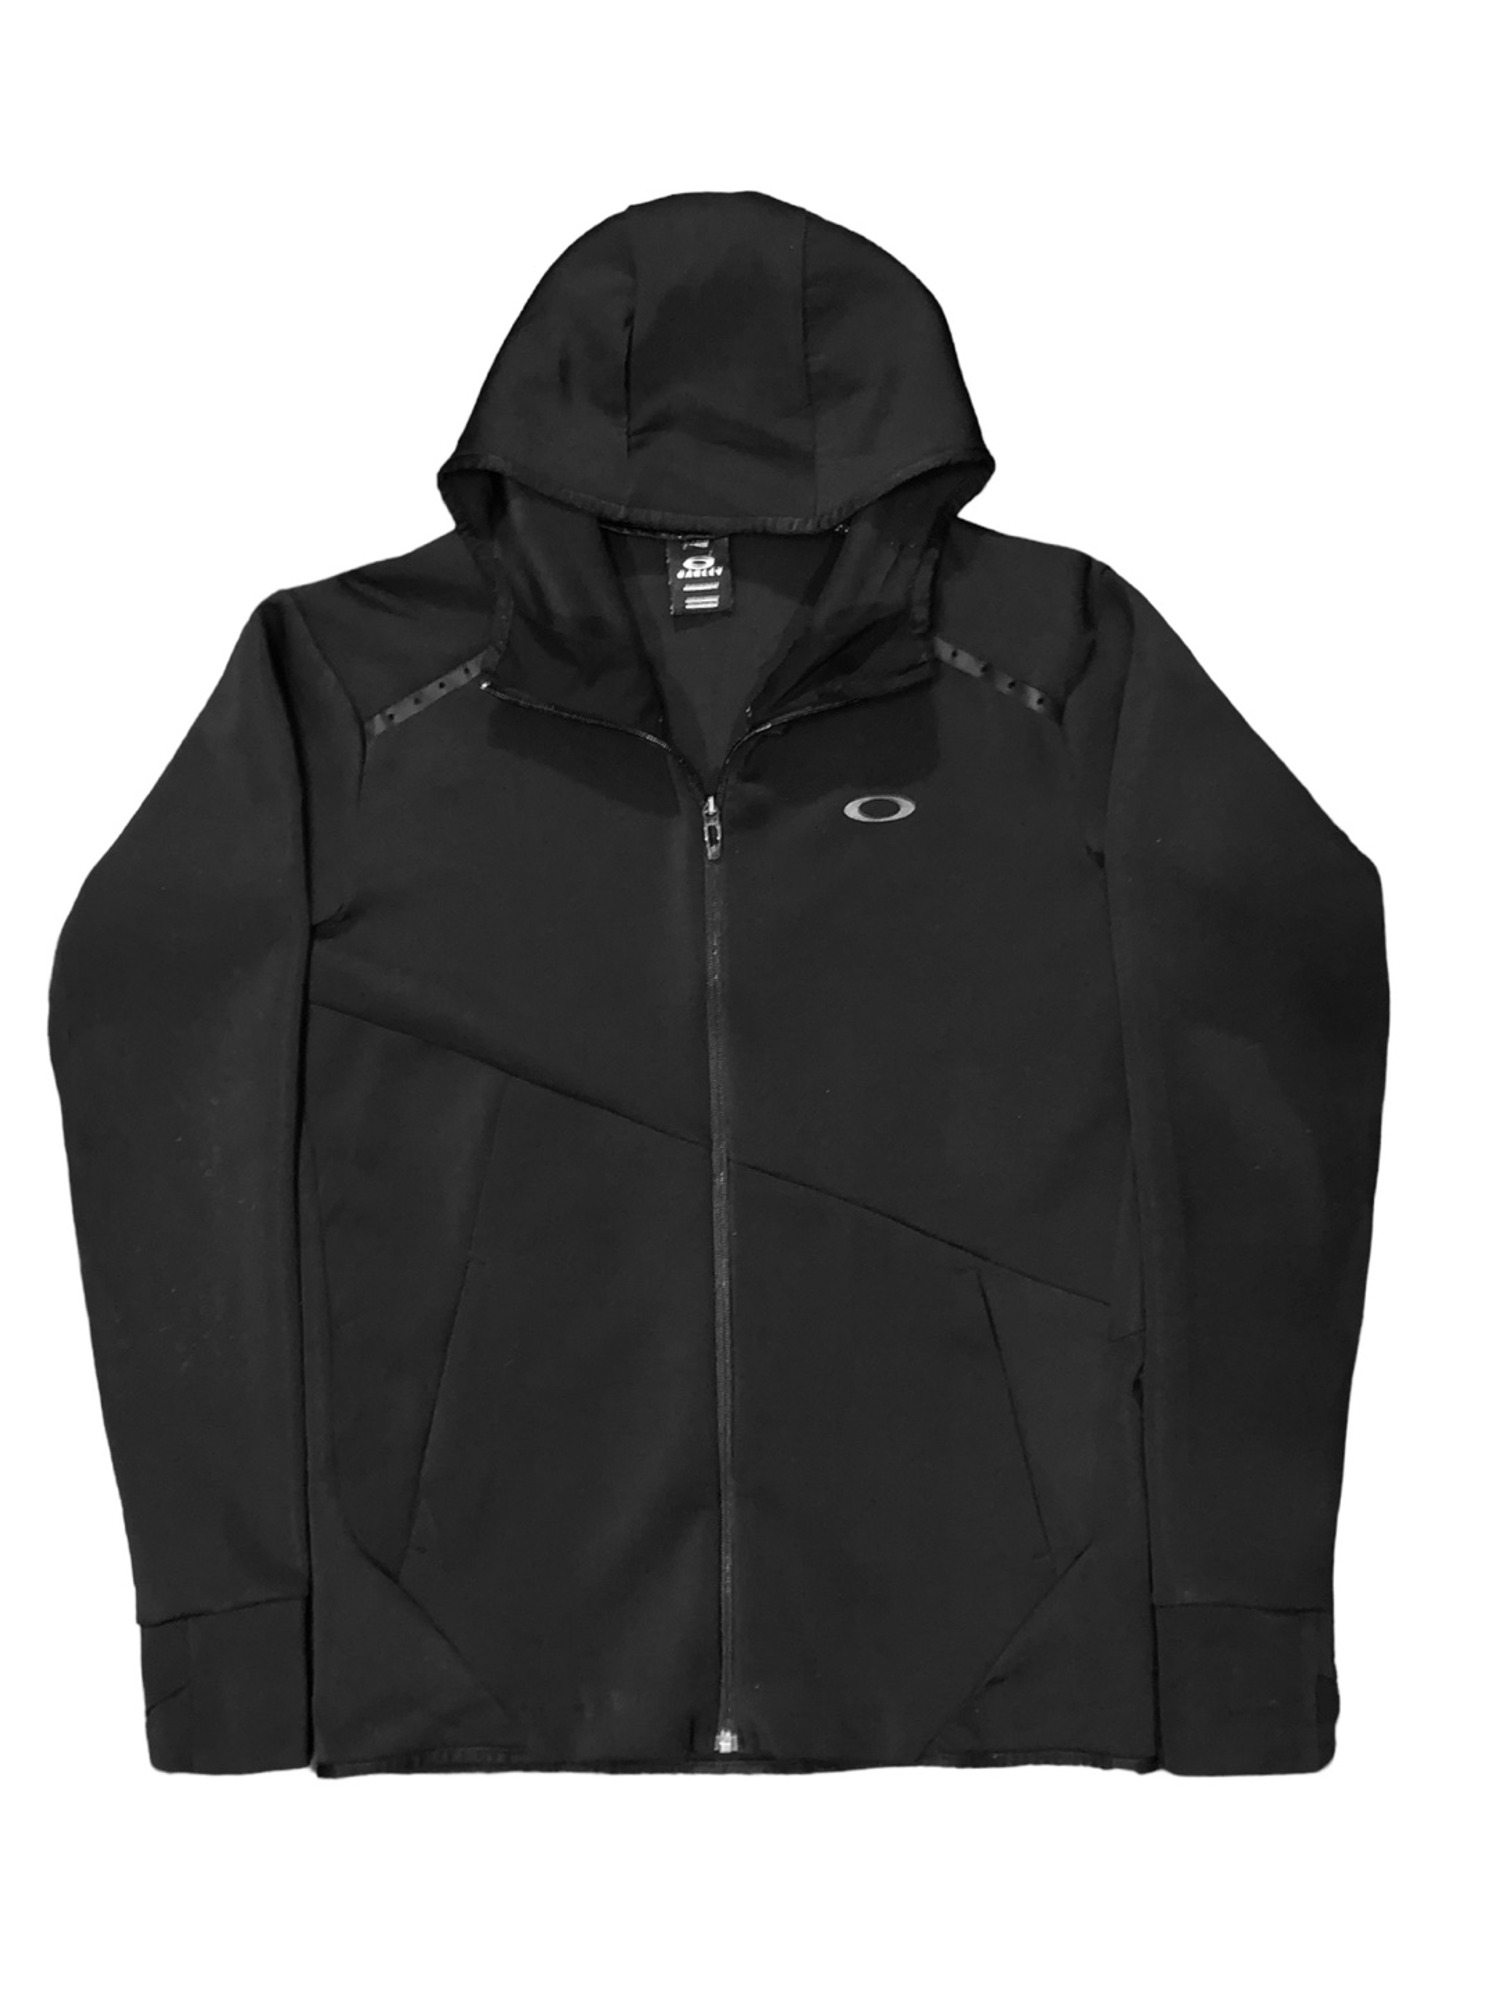 OAKLEY Gorp-Core Hood Jersey Jacket - L ( Black )